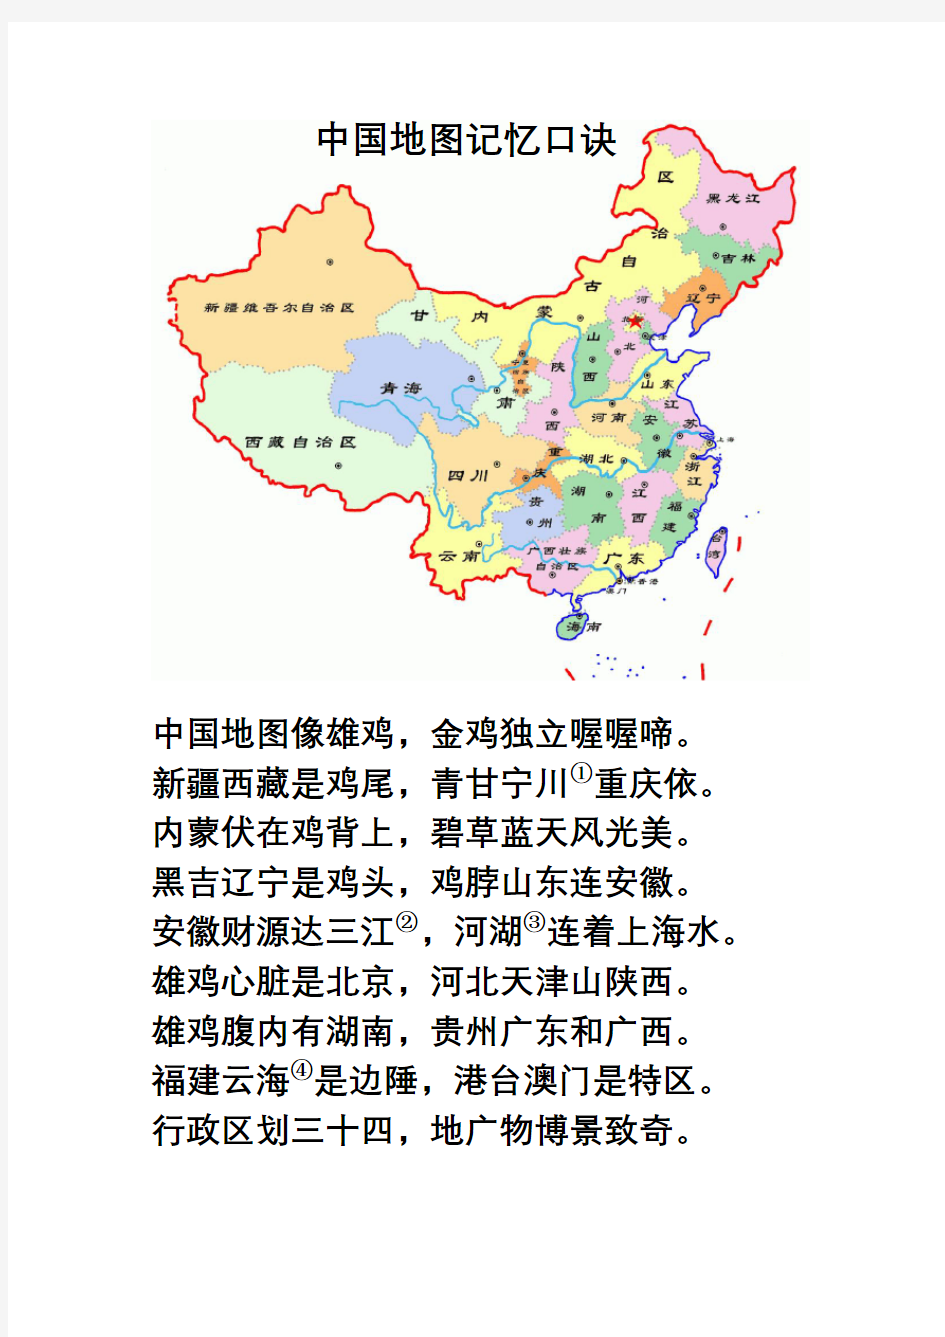 中国地图记忆口诀教学提纲